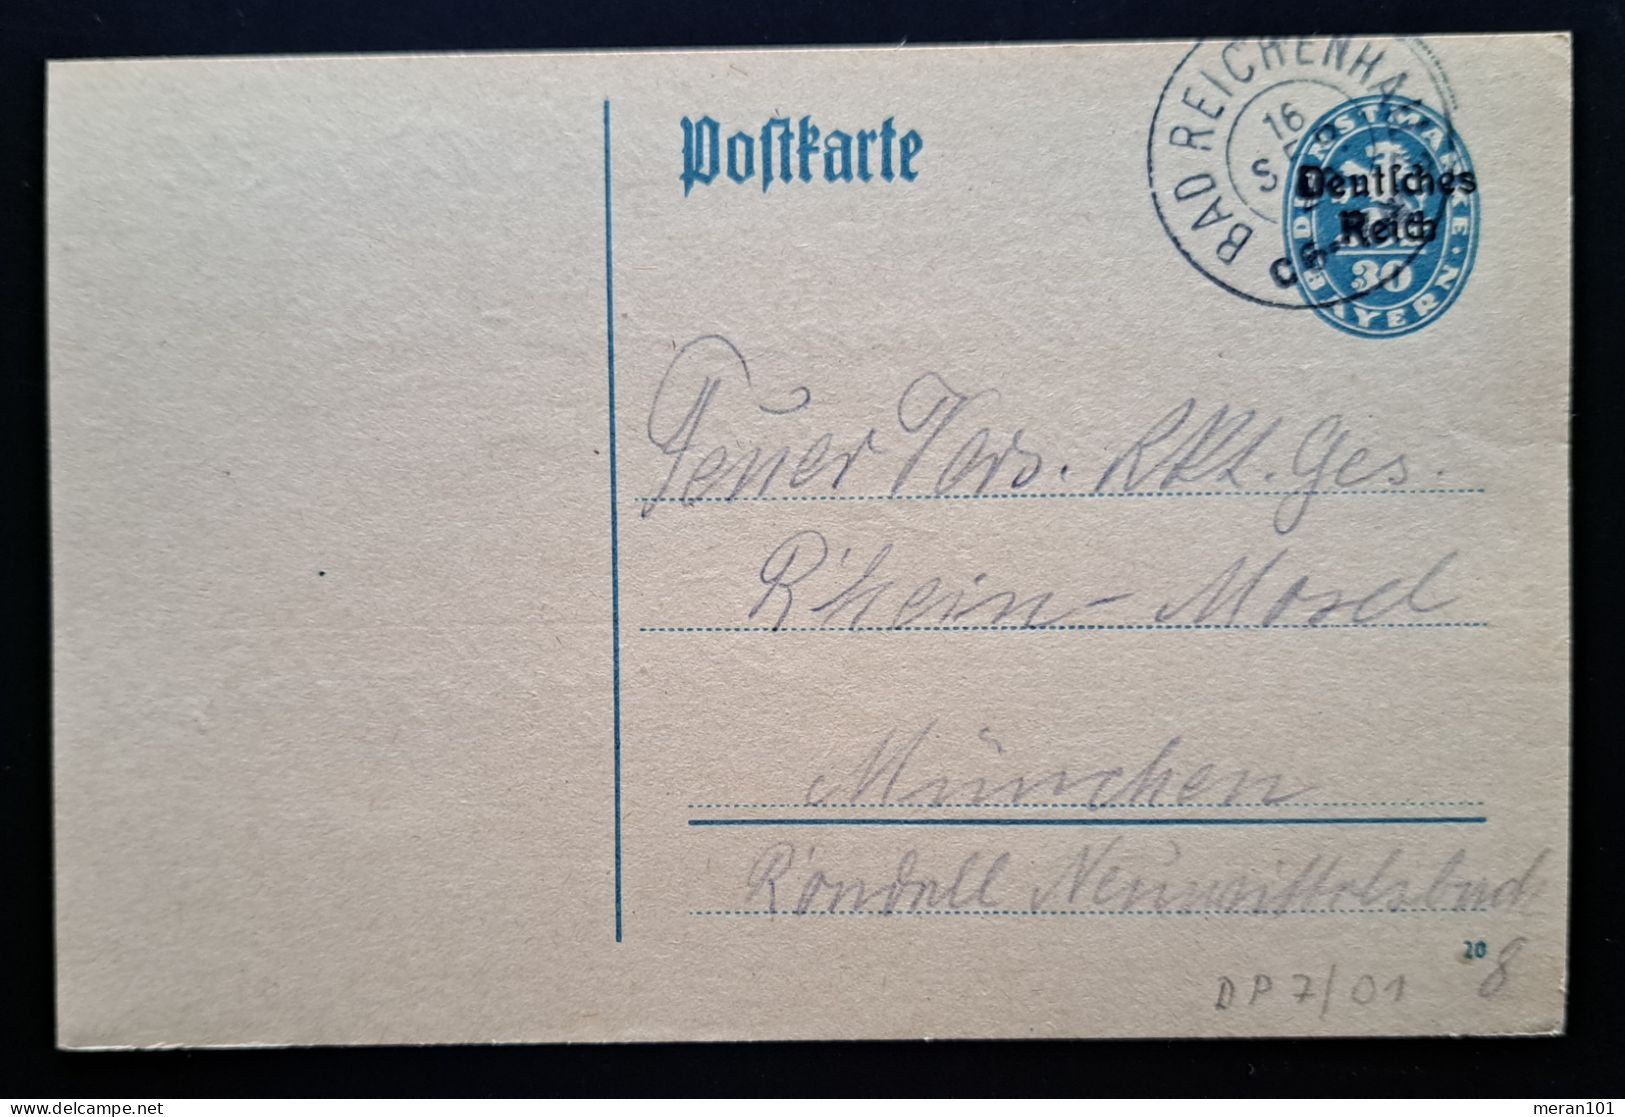 Deutsches Reich DIENST 1920, Dienstpostkarte DP7/01 BAD REICHENHALL - Dienstmarken